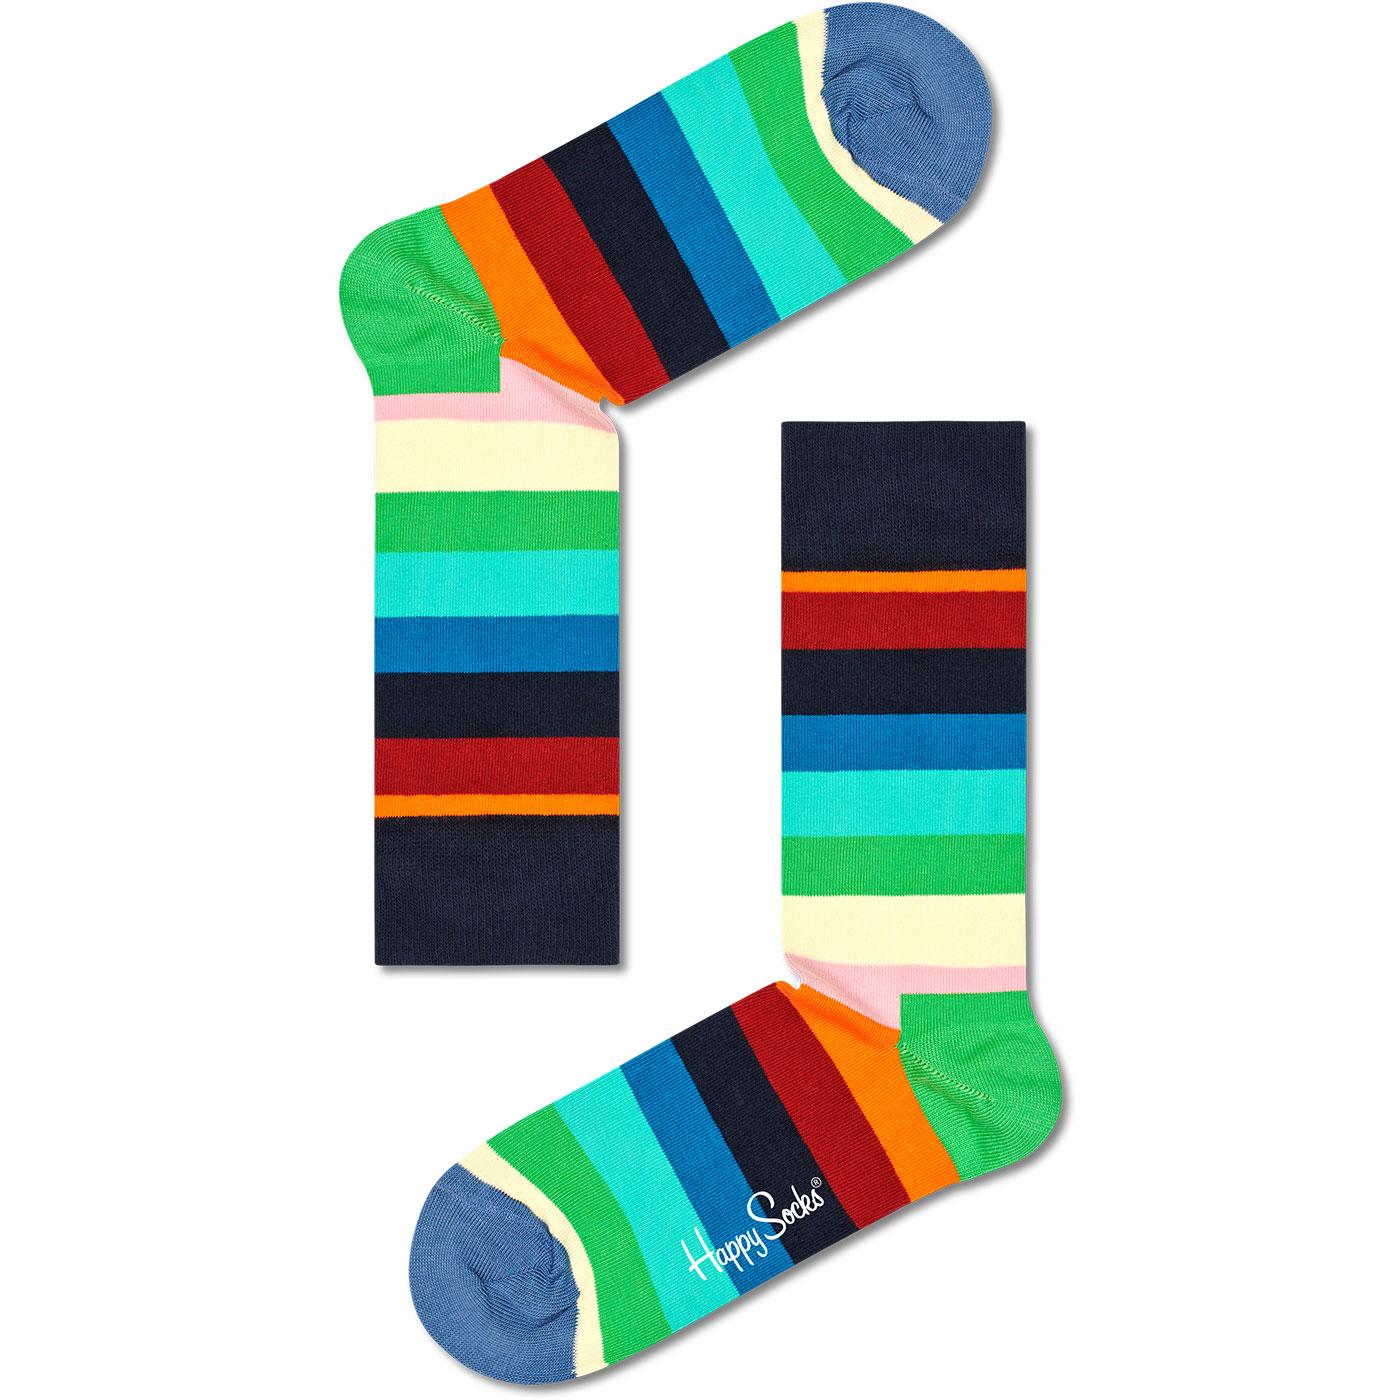 + Retro Stripe HAPPY SOCKS Men's Striped Socks